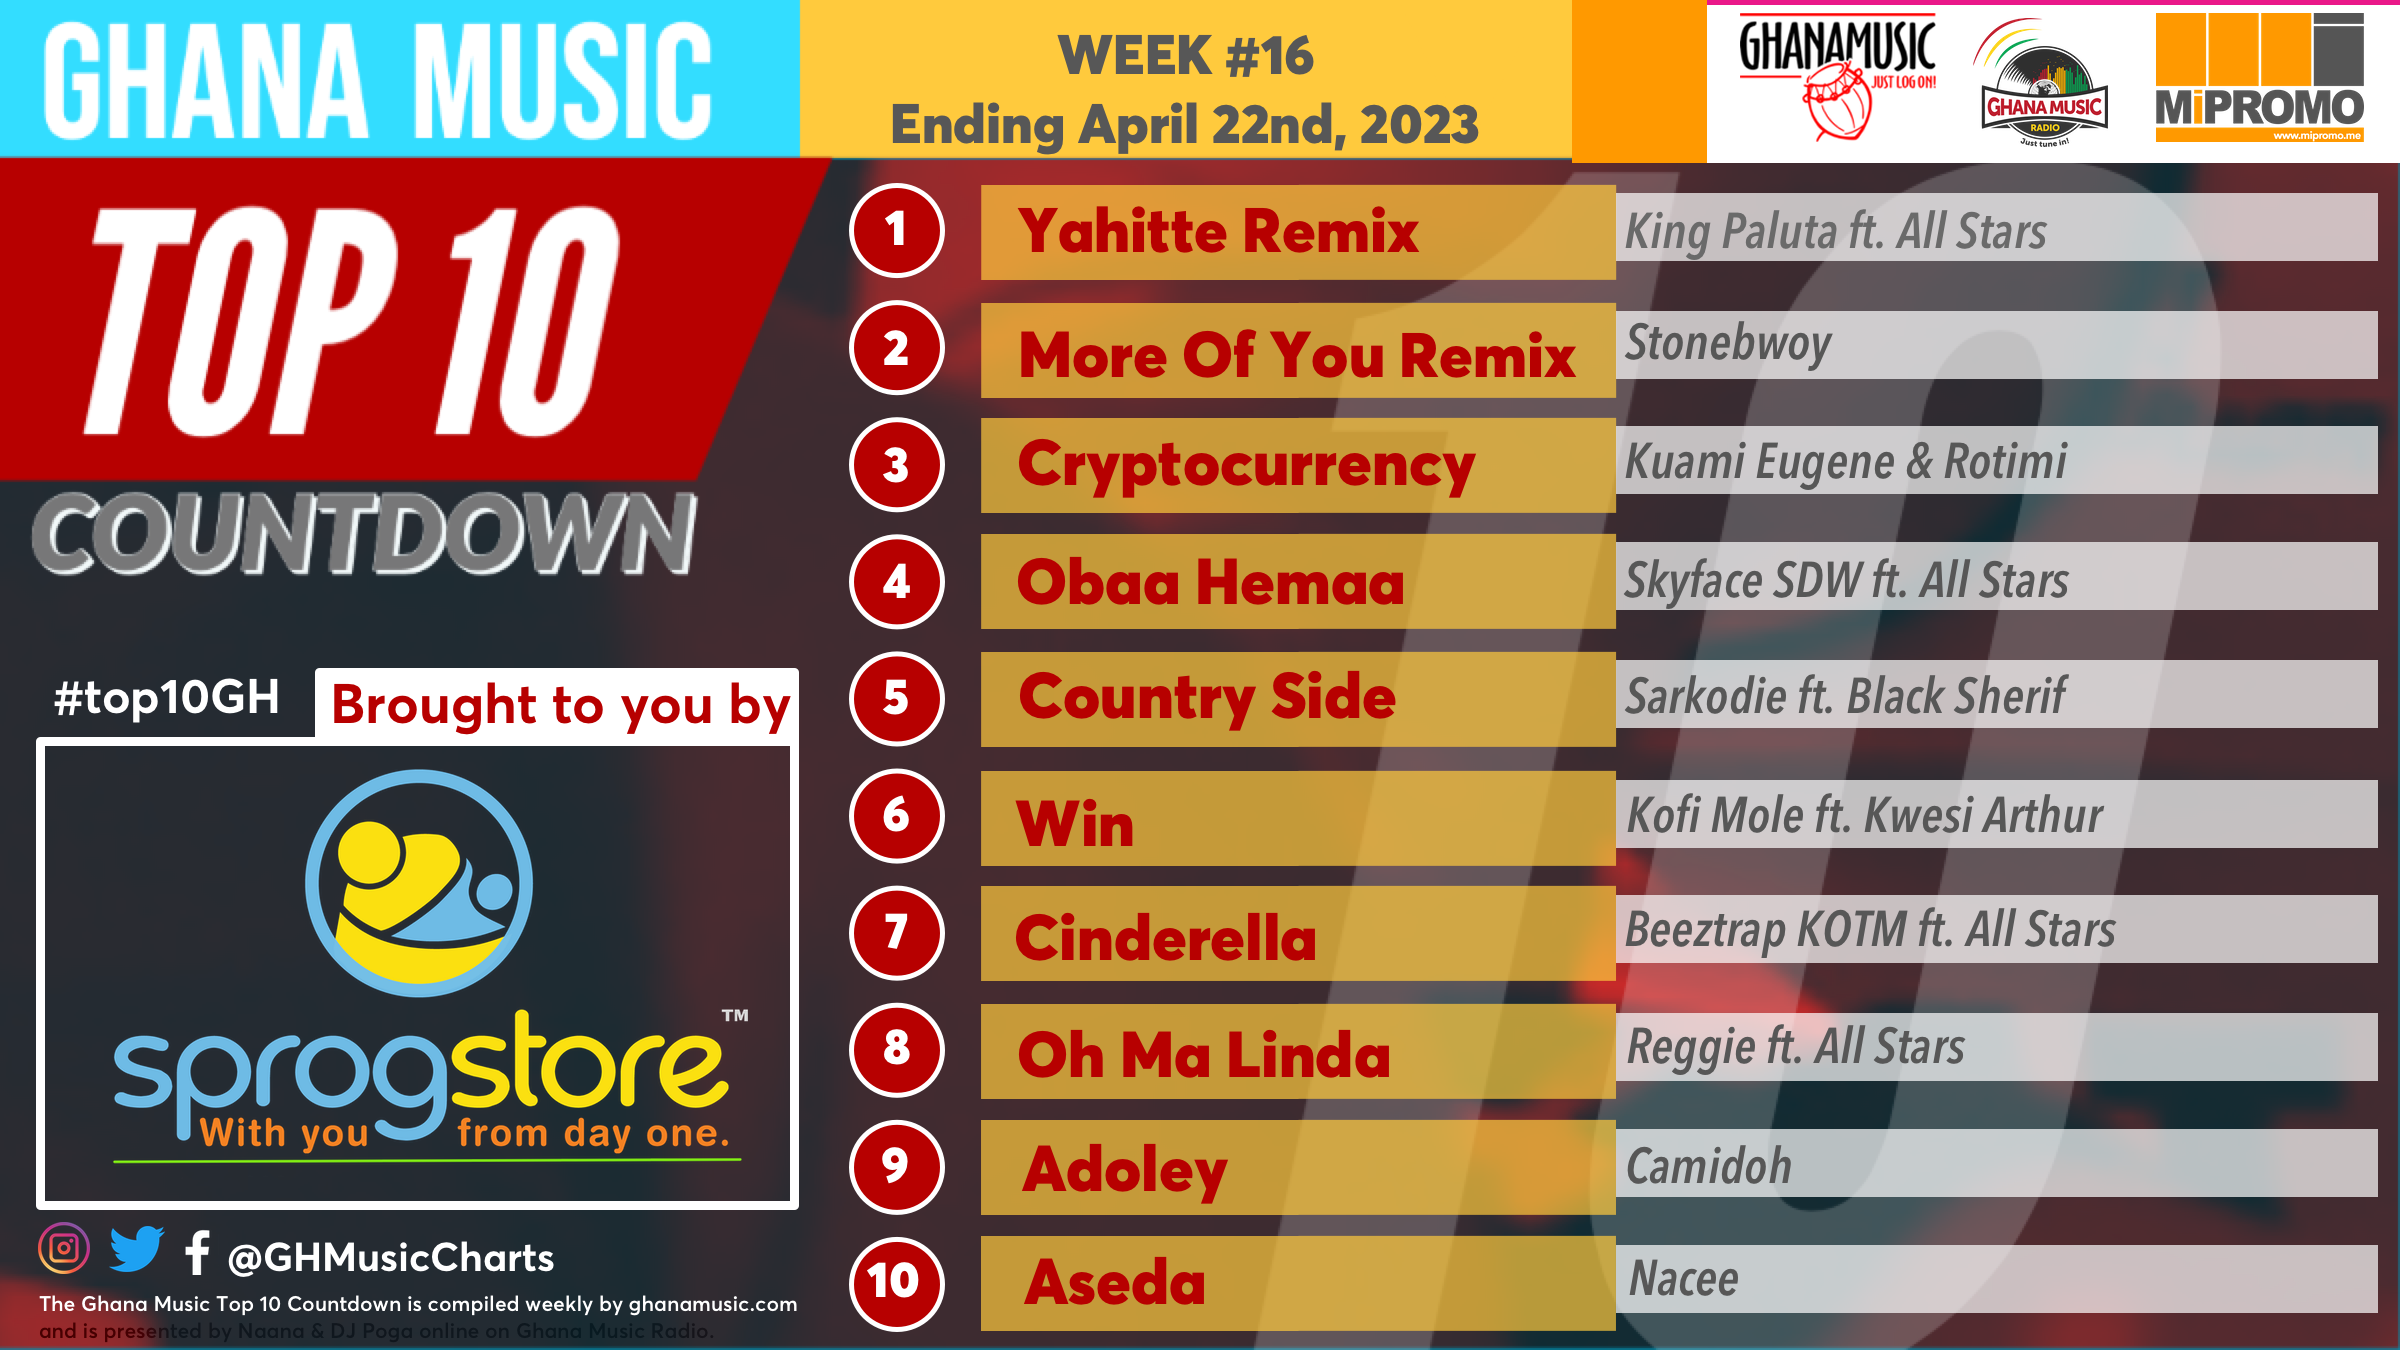 2023 Week 15: Ghana Music Top 10 Countdown